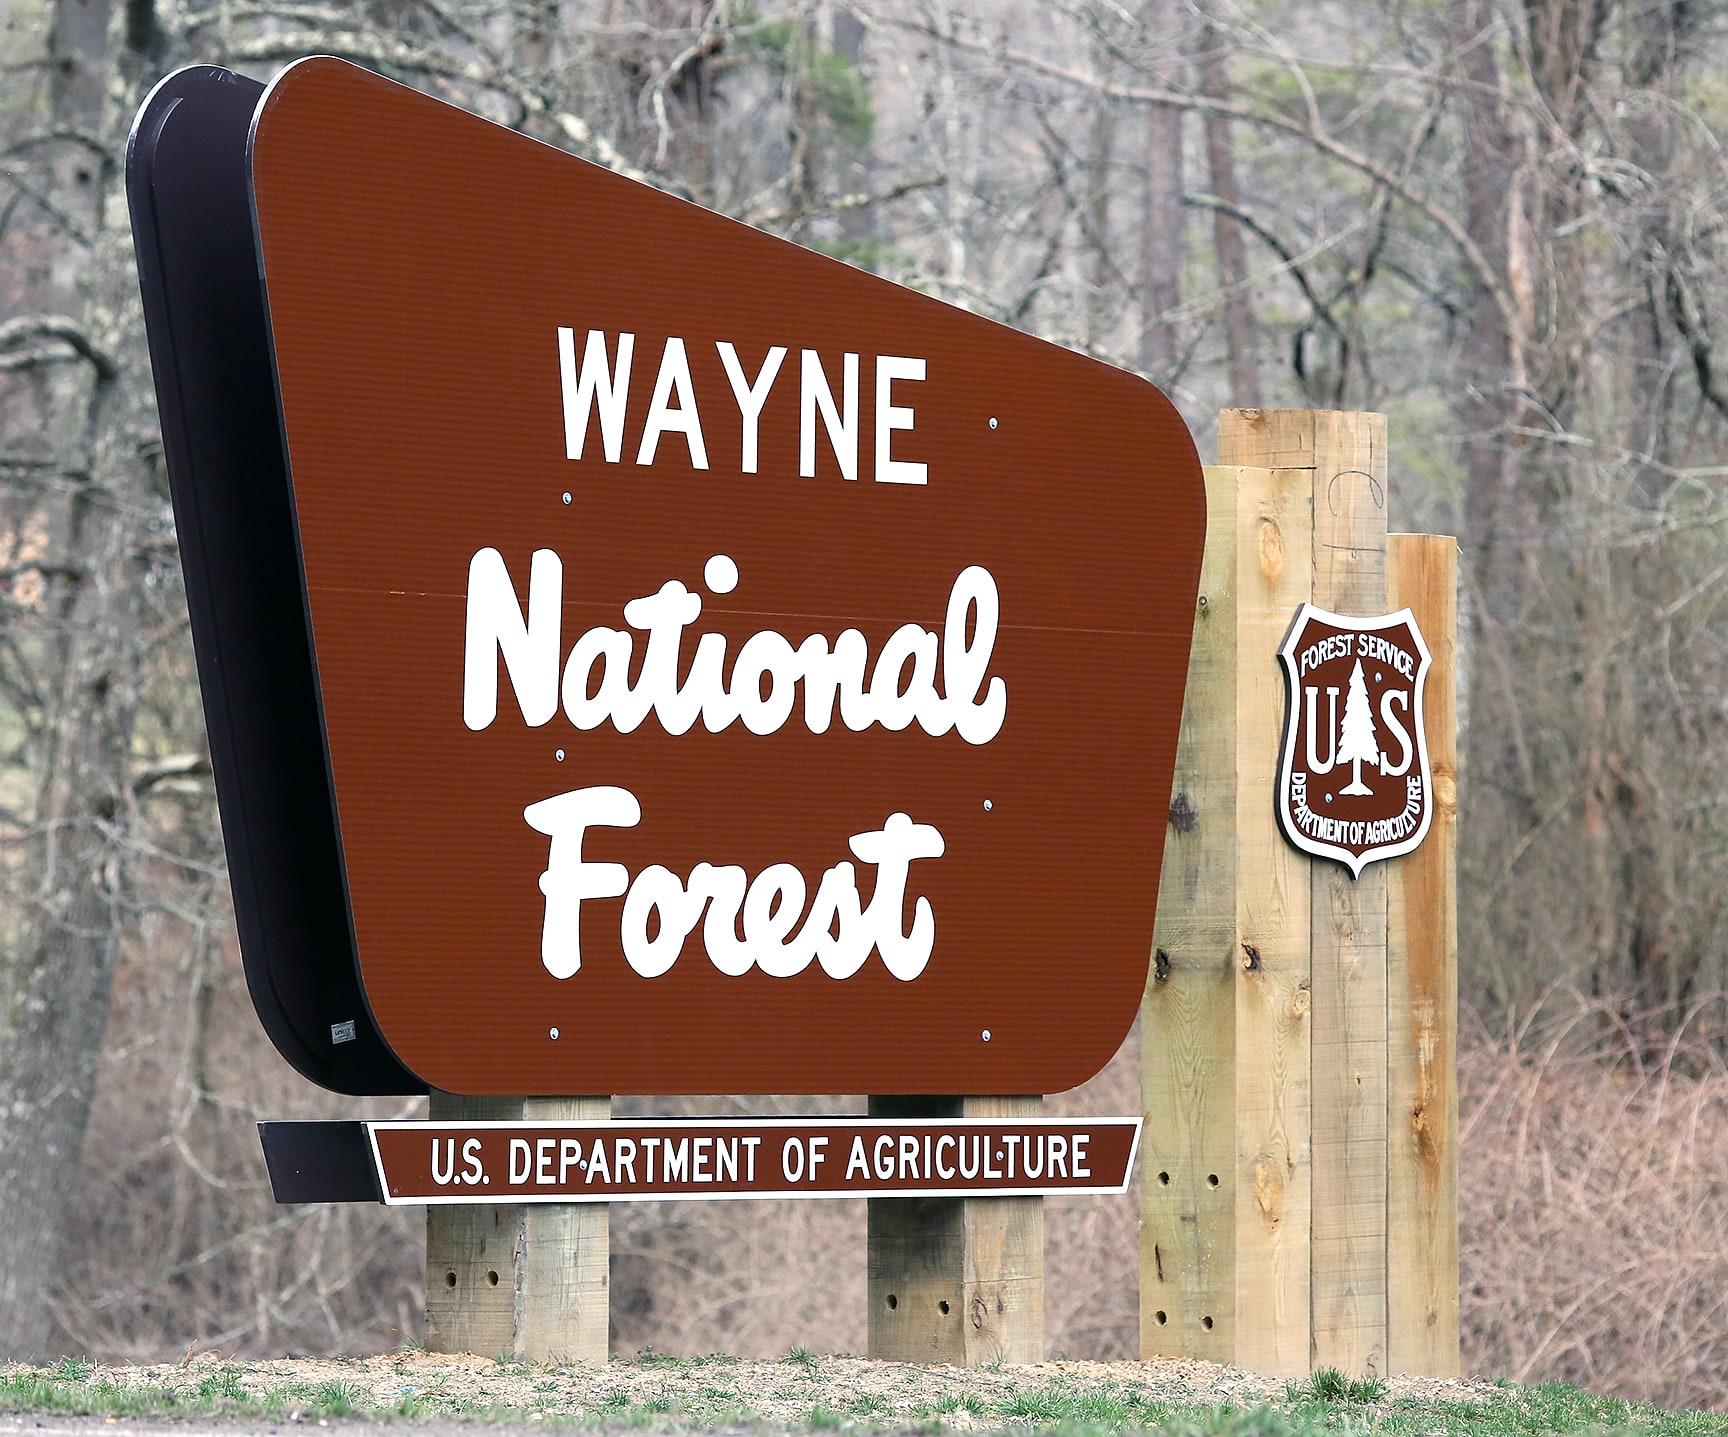 Wayne National Forest, United States